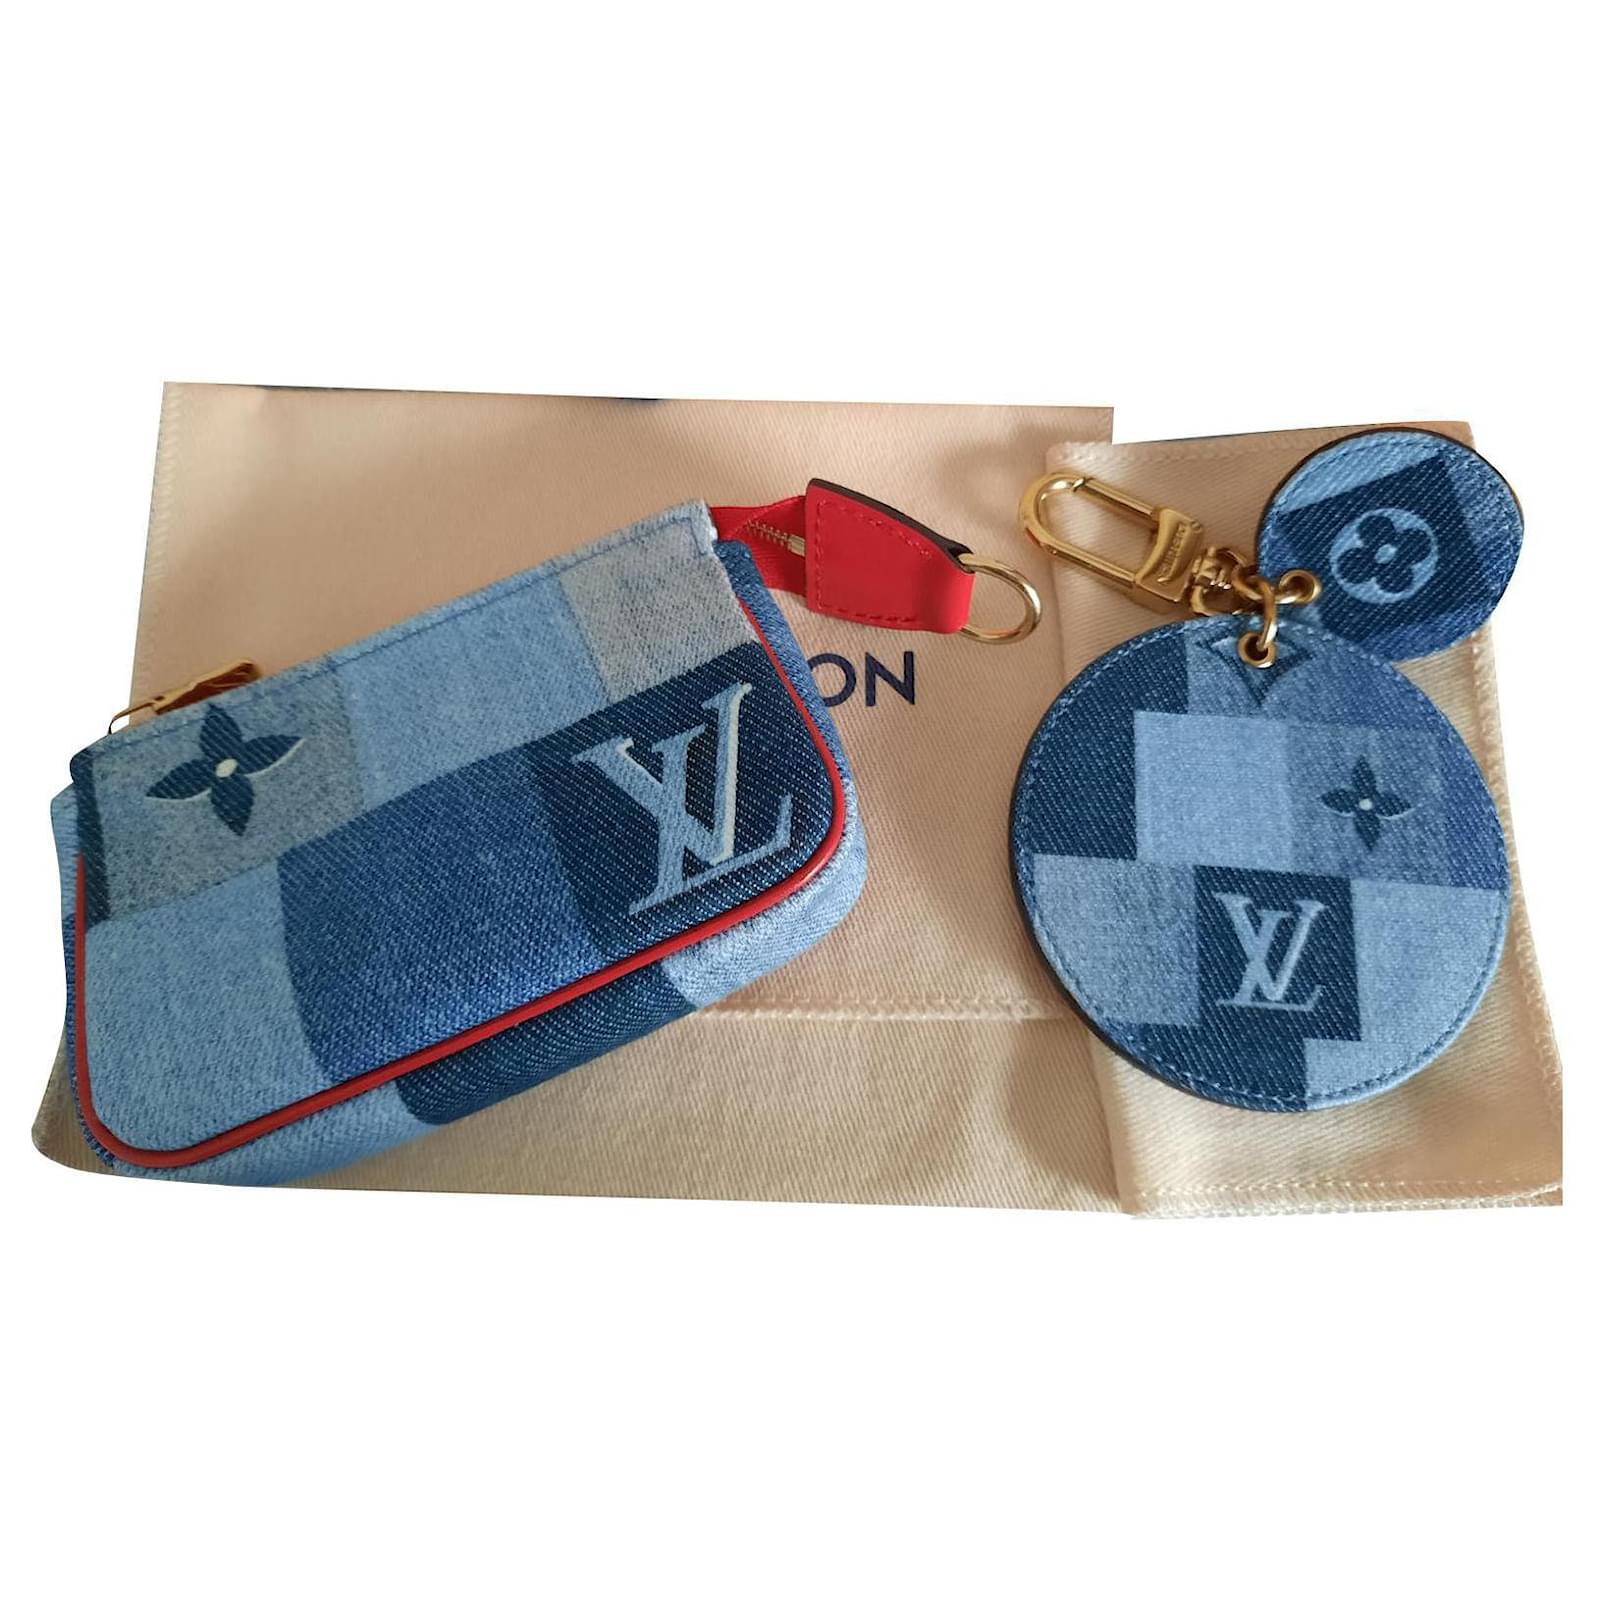 Clutch Bags Louis Vuitton Monogram Denim Pouch + Keyring / Capsule Bag Charm 2020